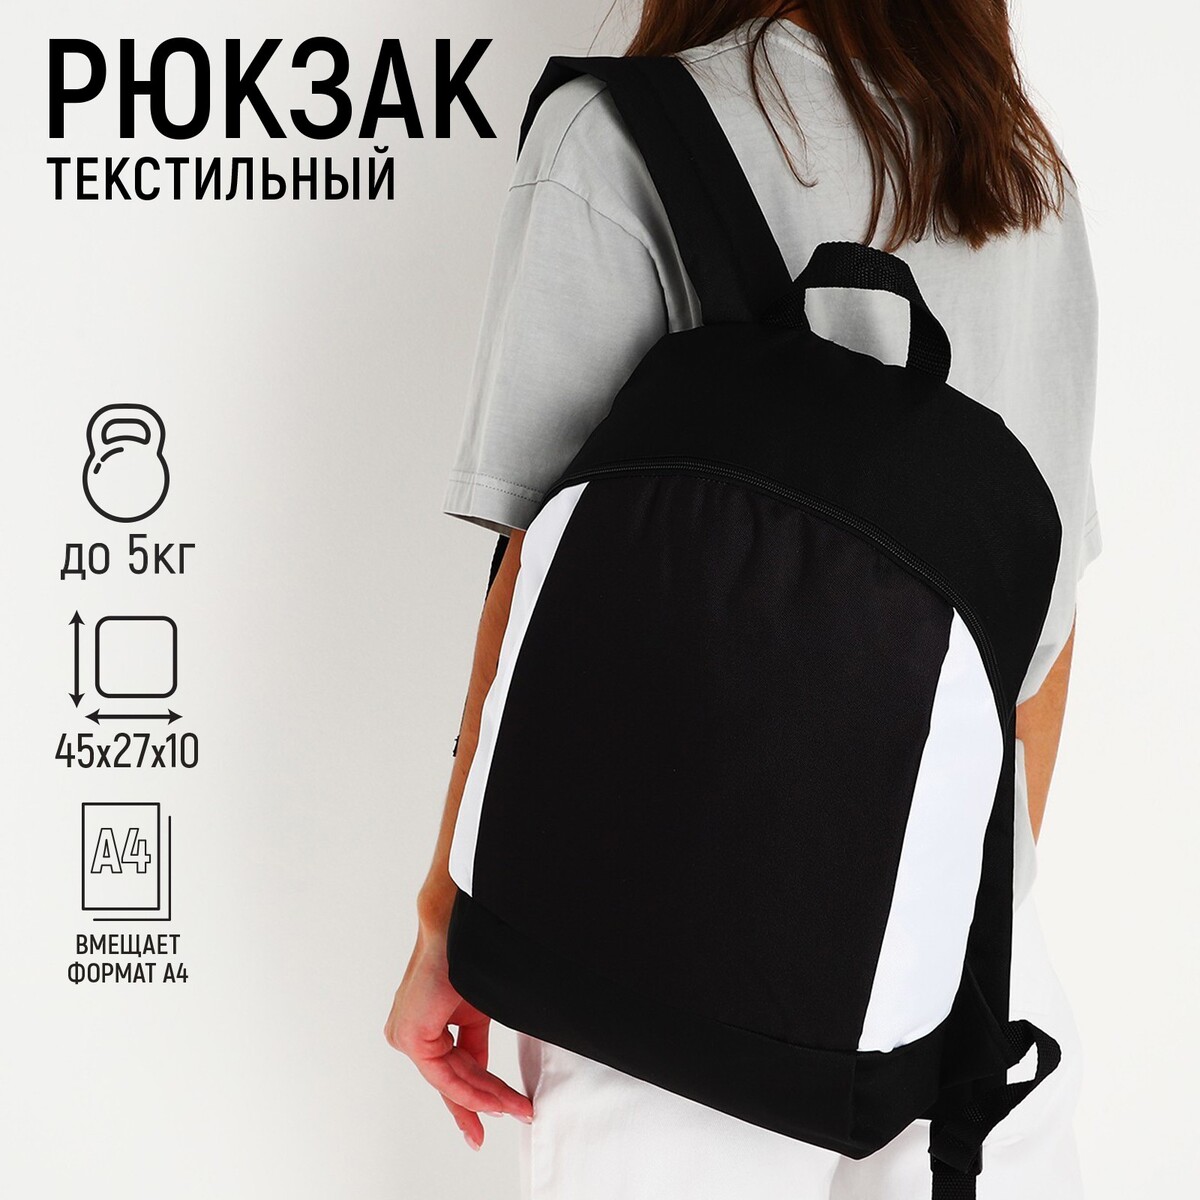 Рюкзак текстильный 46х30х10 см, вертикальный карман, цвет черно-белый рюкзак текстильный 46х30х10 см вертикальный карман